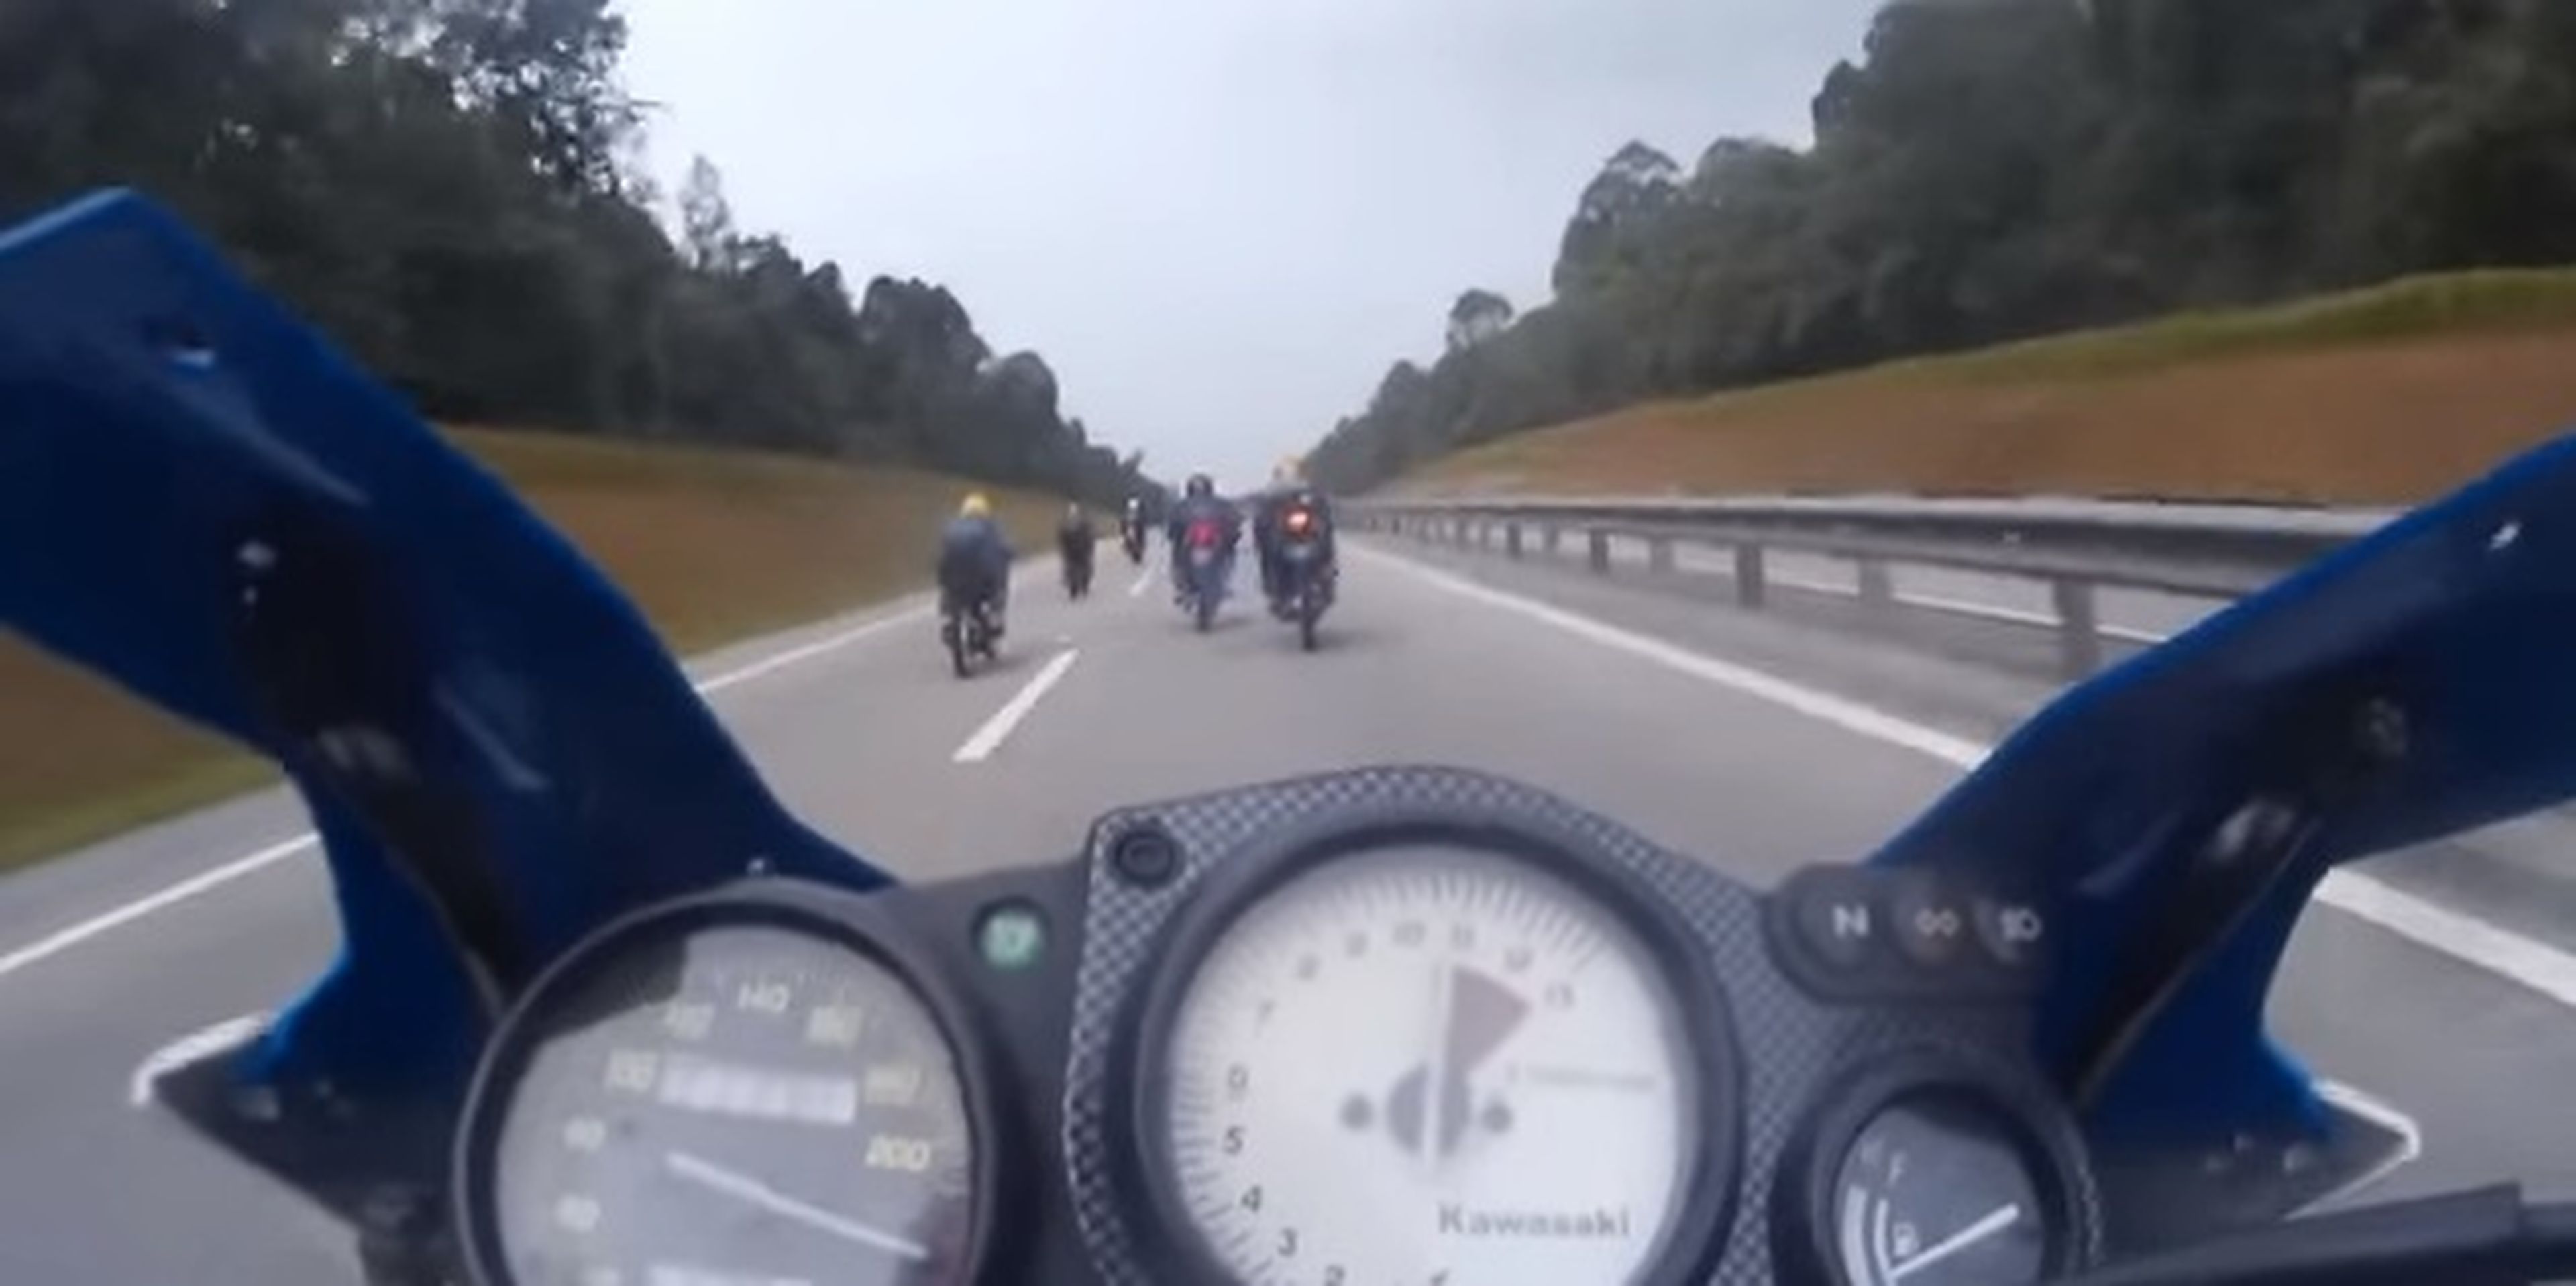 Kuala Lumpur permitirá las carreras ilegales de motos